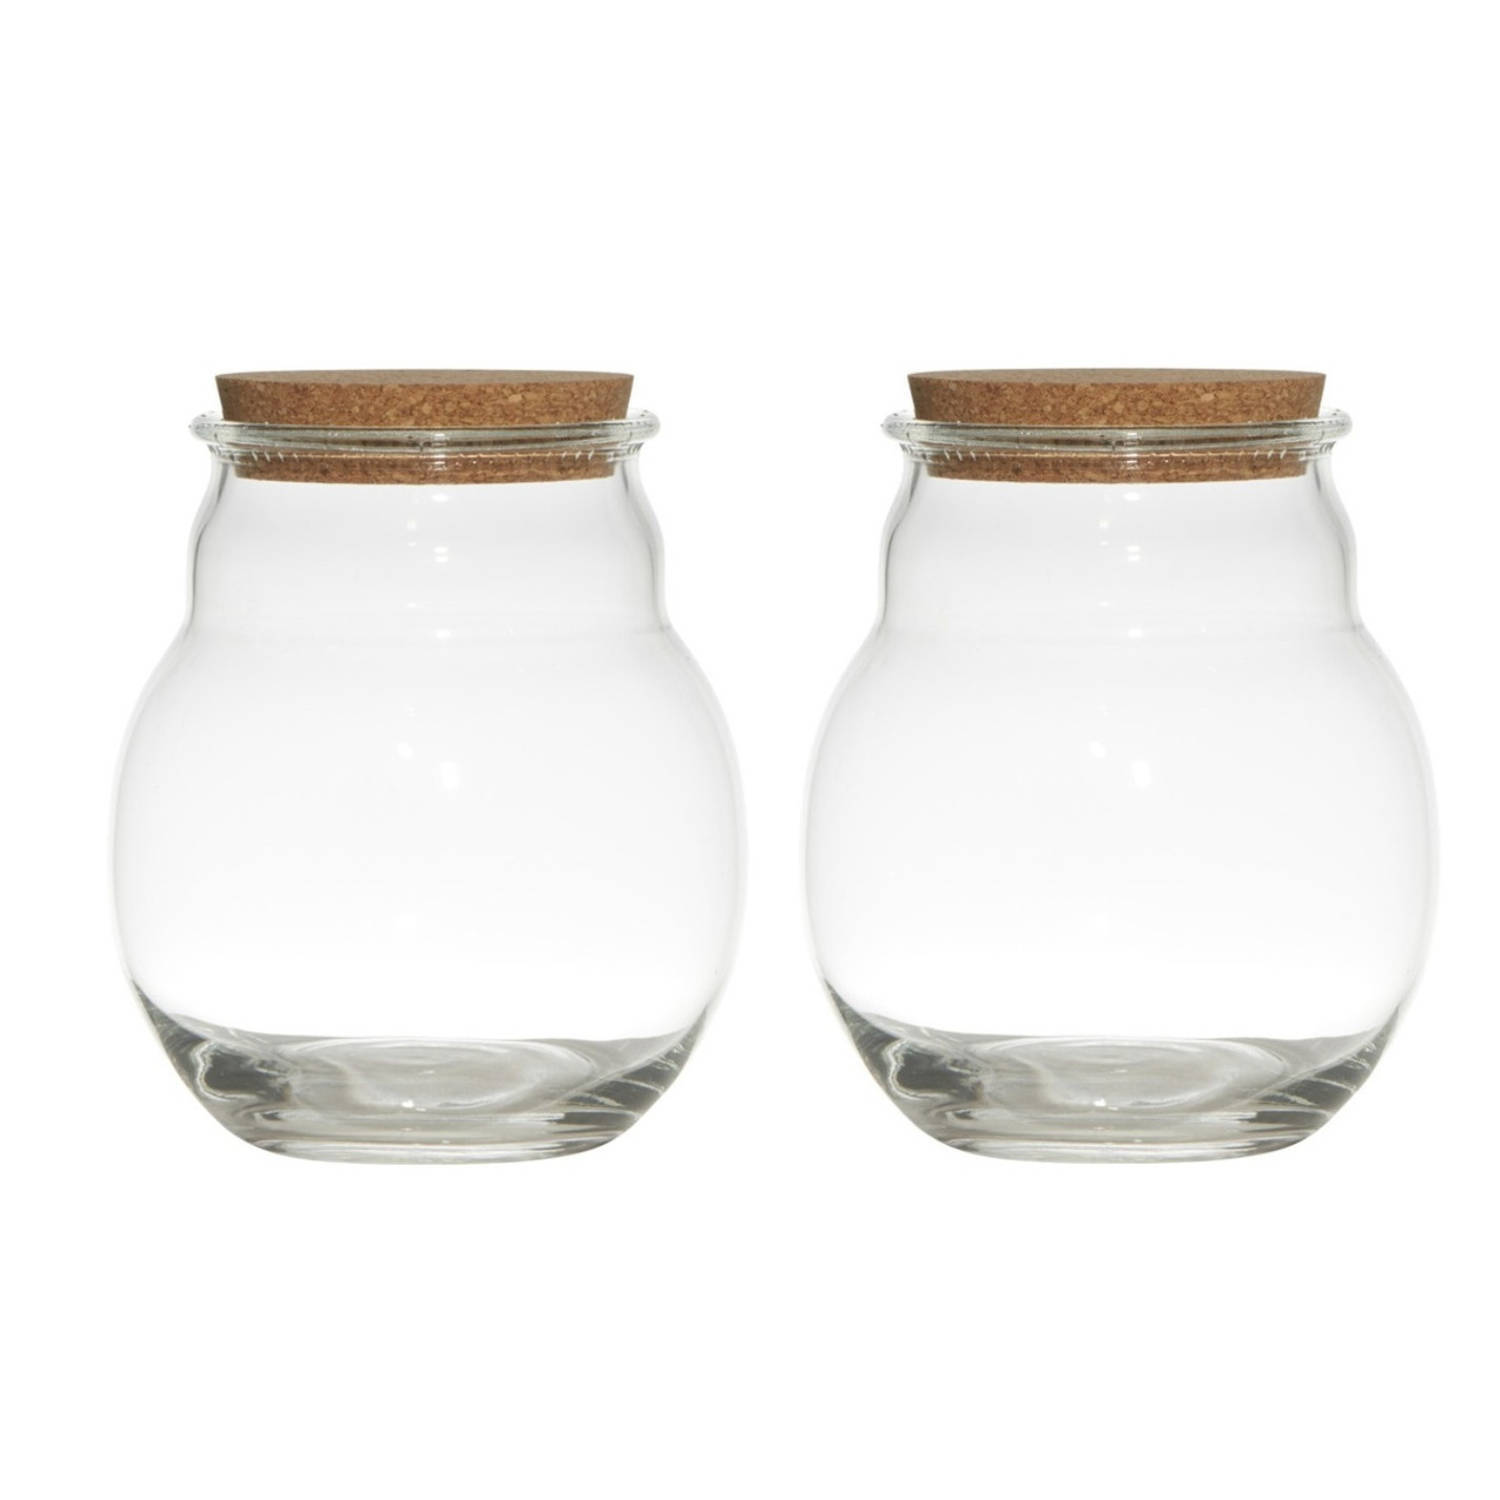 Bellatio Design Set van 2x stuks glazen voorraadpotten/snoeppotten/terrarium vazen van 17 x 20 cm met kurk dop